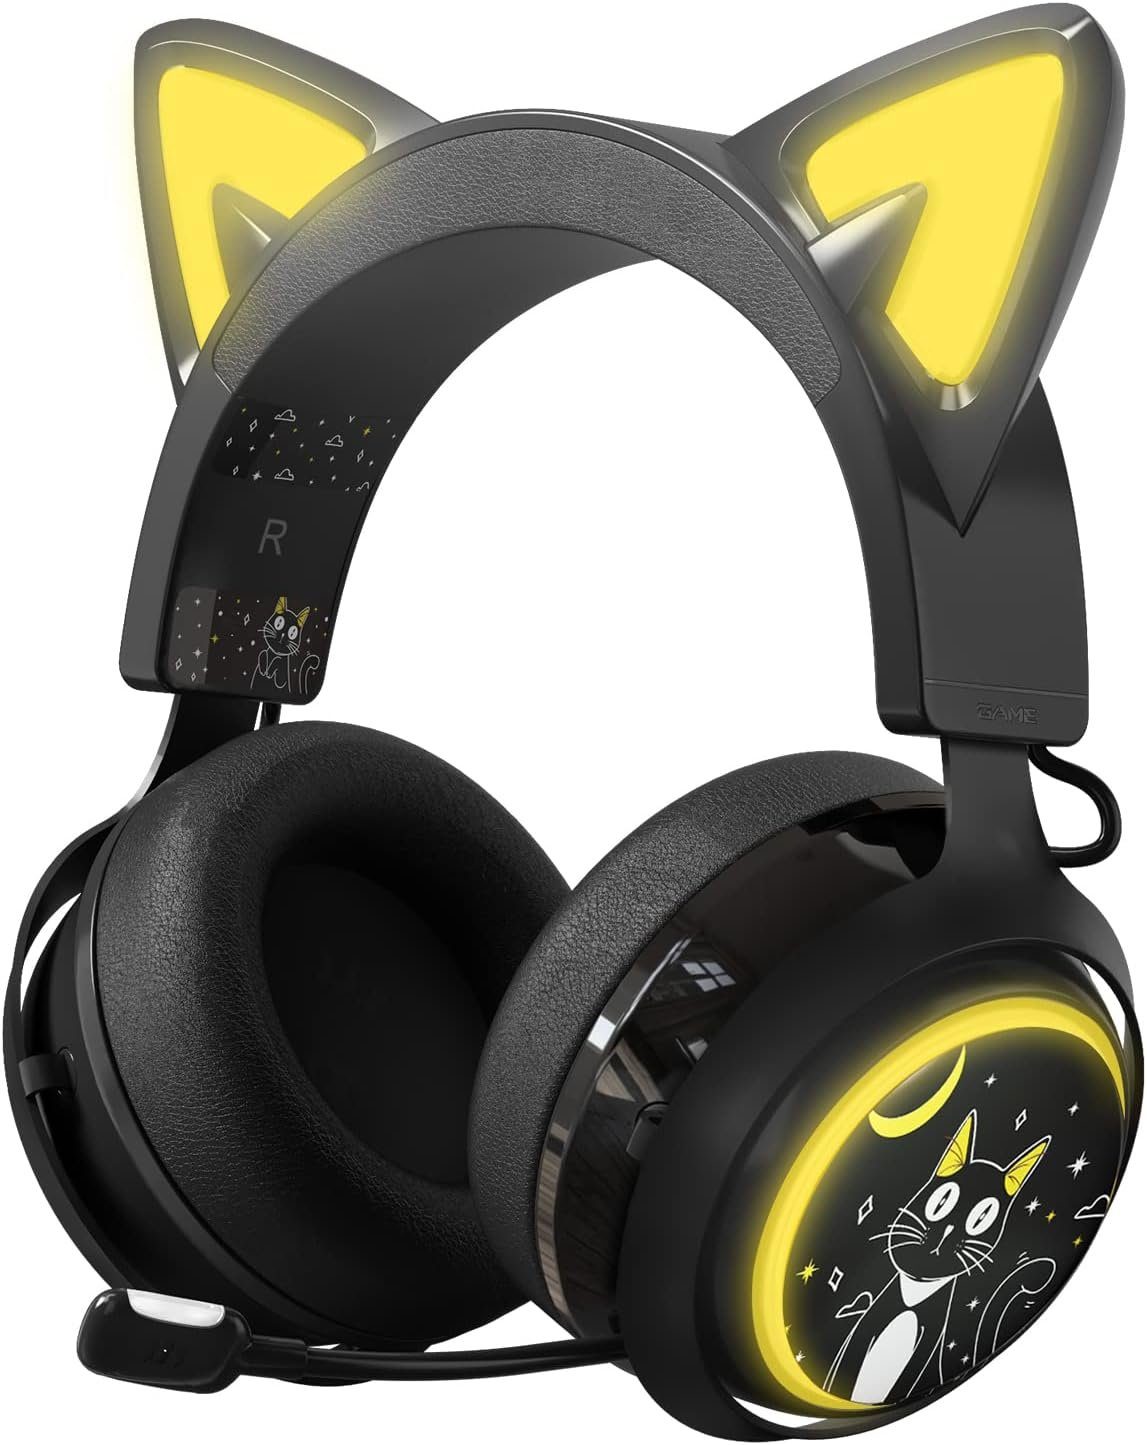 EASARS 50mm Lautsprecher für realistischen Stereosound Gaming-Headset (Hochwertige, weiche Ohrpolster und ergonomische Tragestruktur für druckfreien Langzeitkomfor, mit kawaii Katzenohren,Wechsel zwischen 9 coolen Farben durch Berühren)